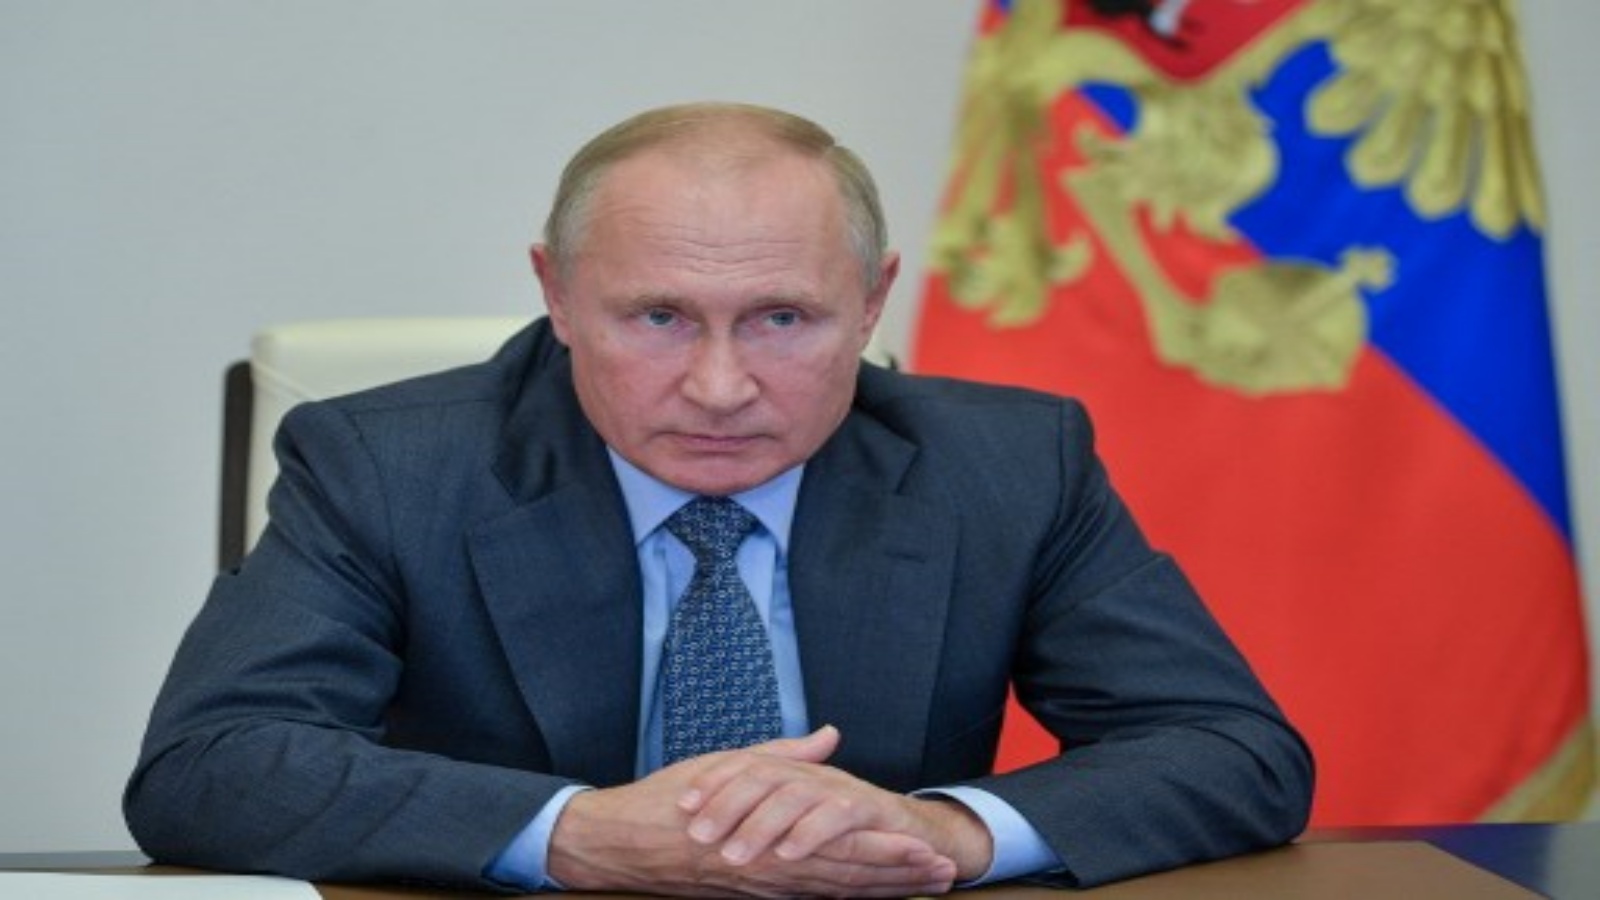 الاتحاد الأوروبي يفرض عقوبات على مقربين من بوتين